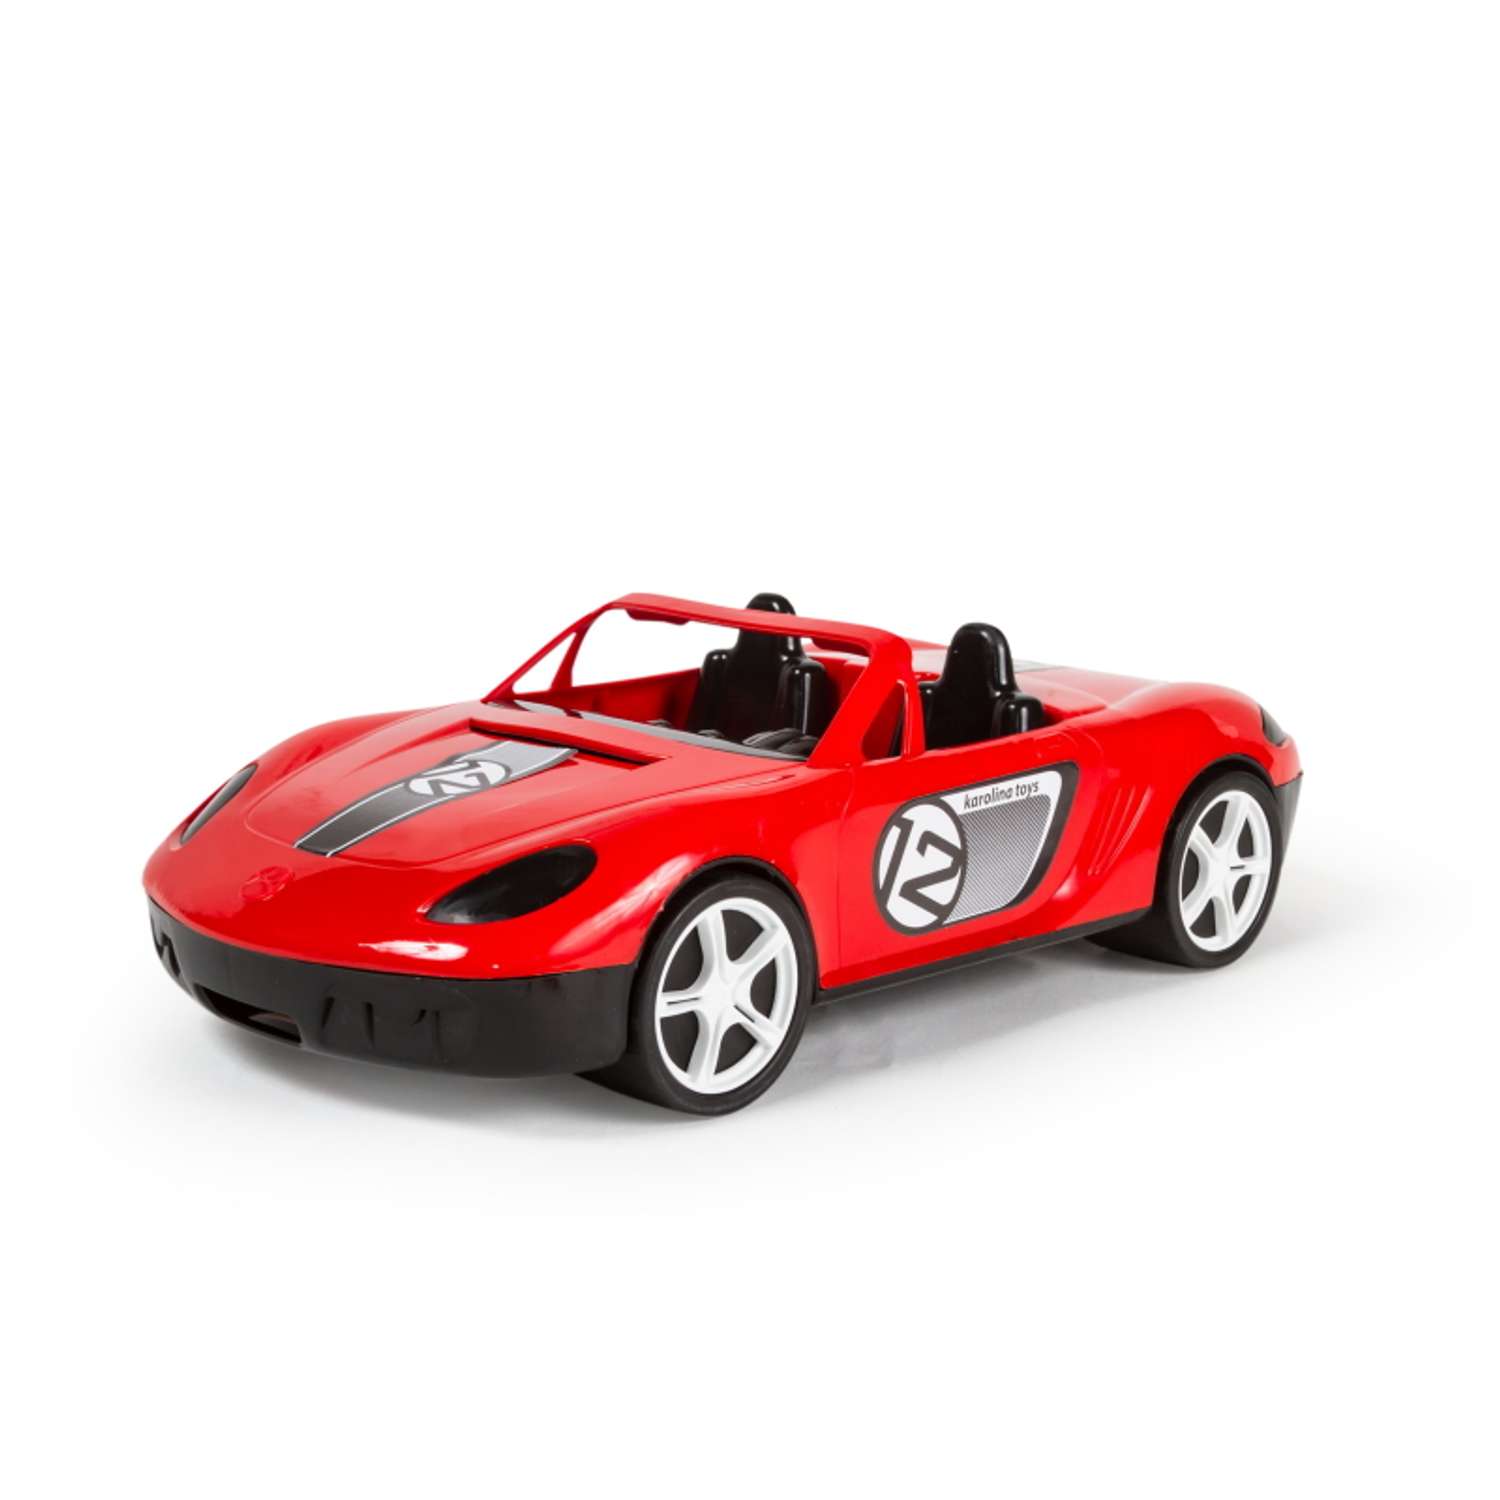 Детский автомобиль Mobicaro Спорткар Кабриолет в ассортименте ДАСК5 - фото 4